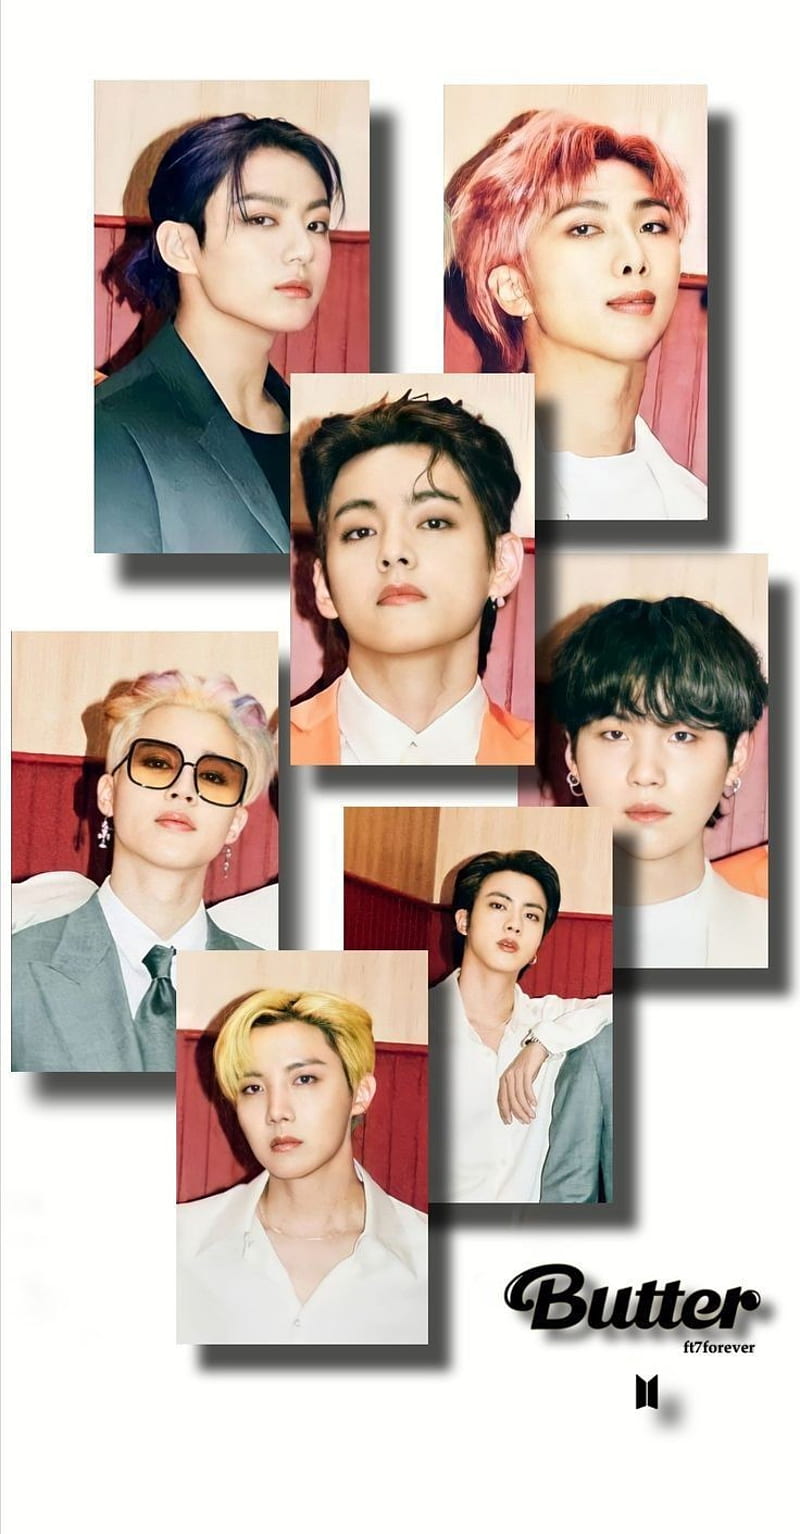 Bts butter, jhope, jimin, suga, rm, jungkook, jin, HD phone wallpaper